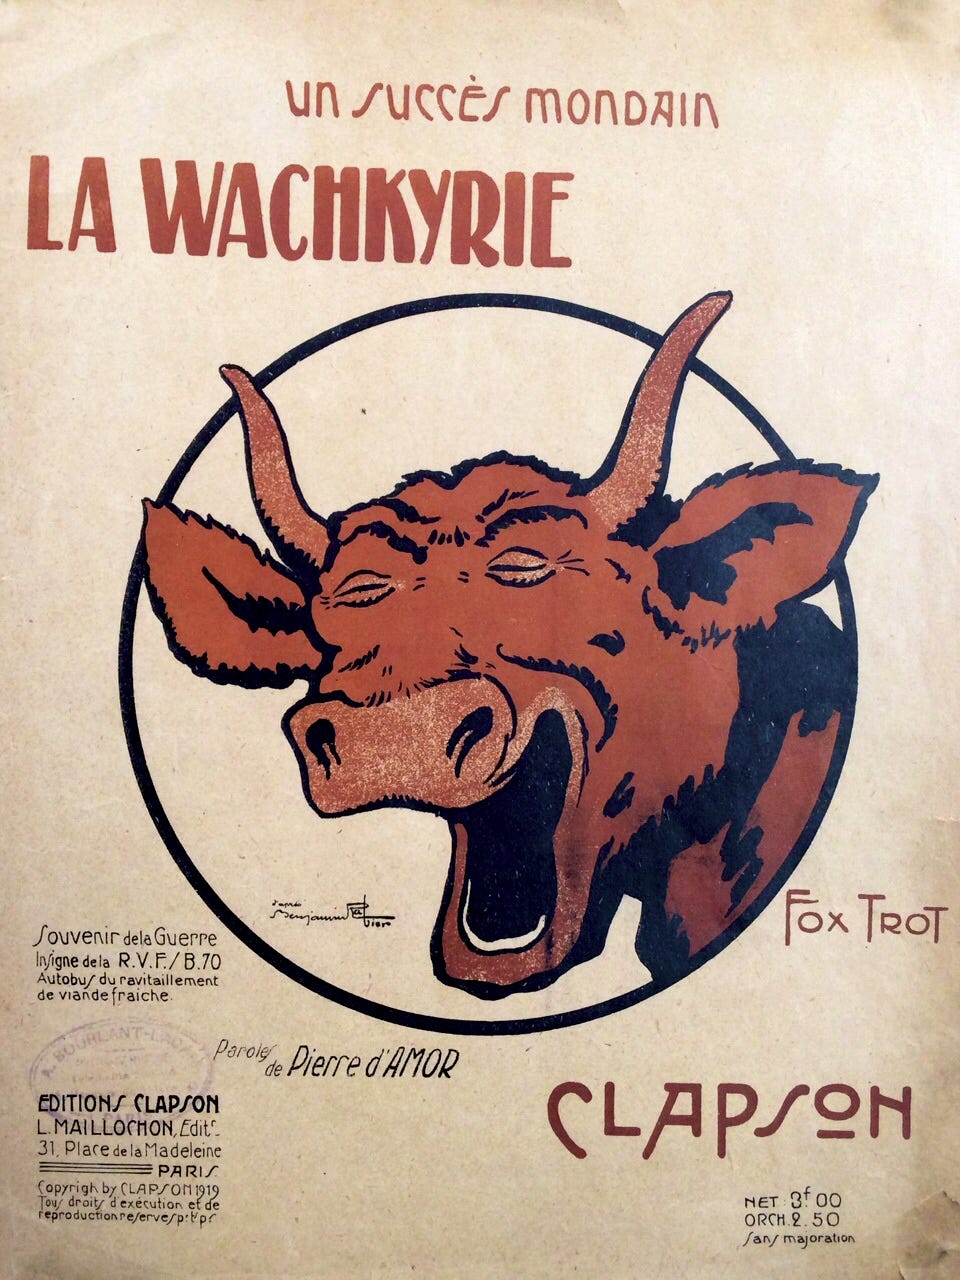 File:La Wachkyrie fox trot.jpg - Wikimedia Commons